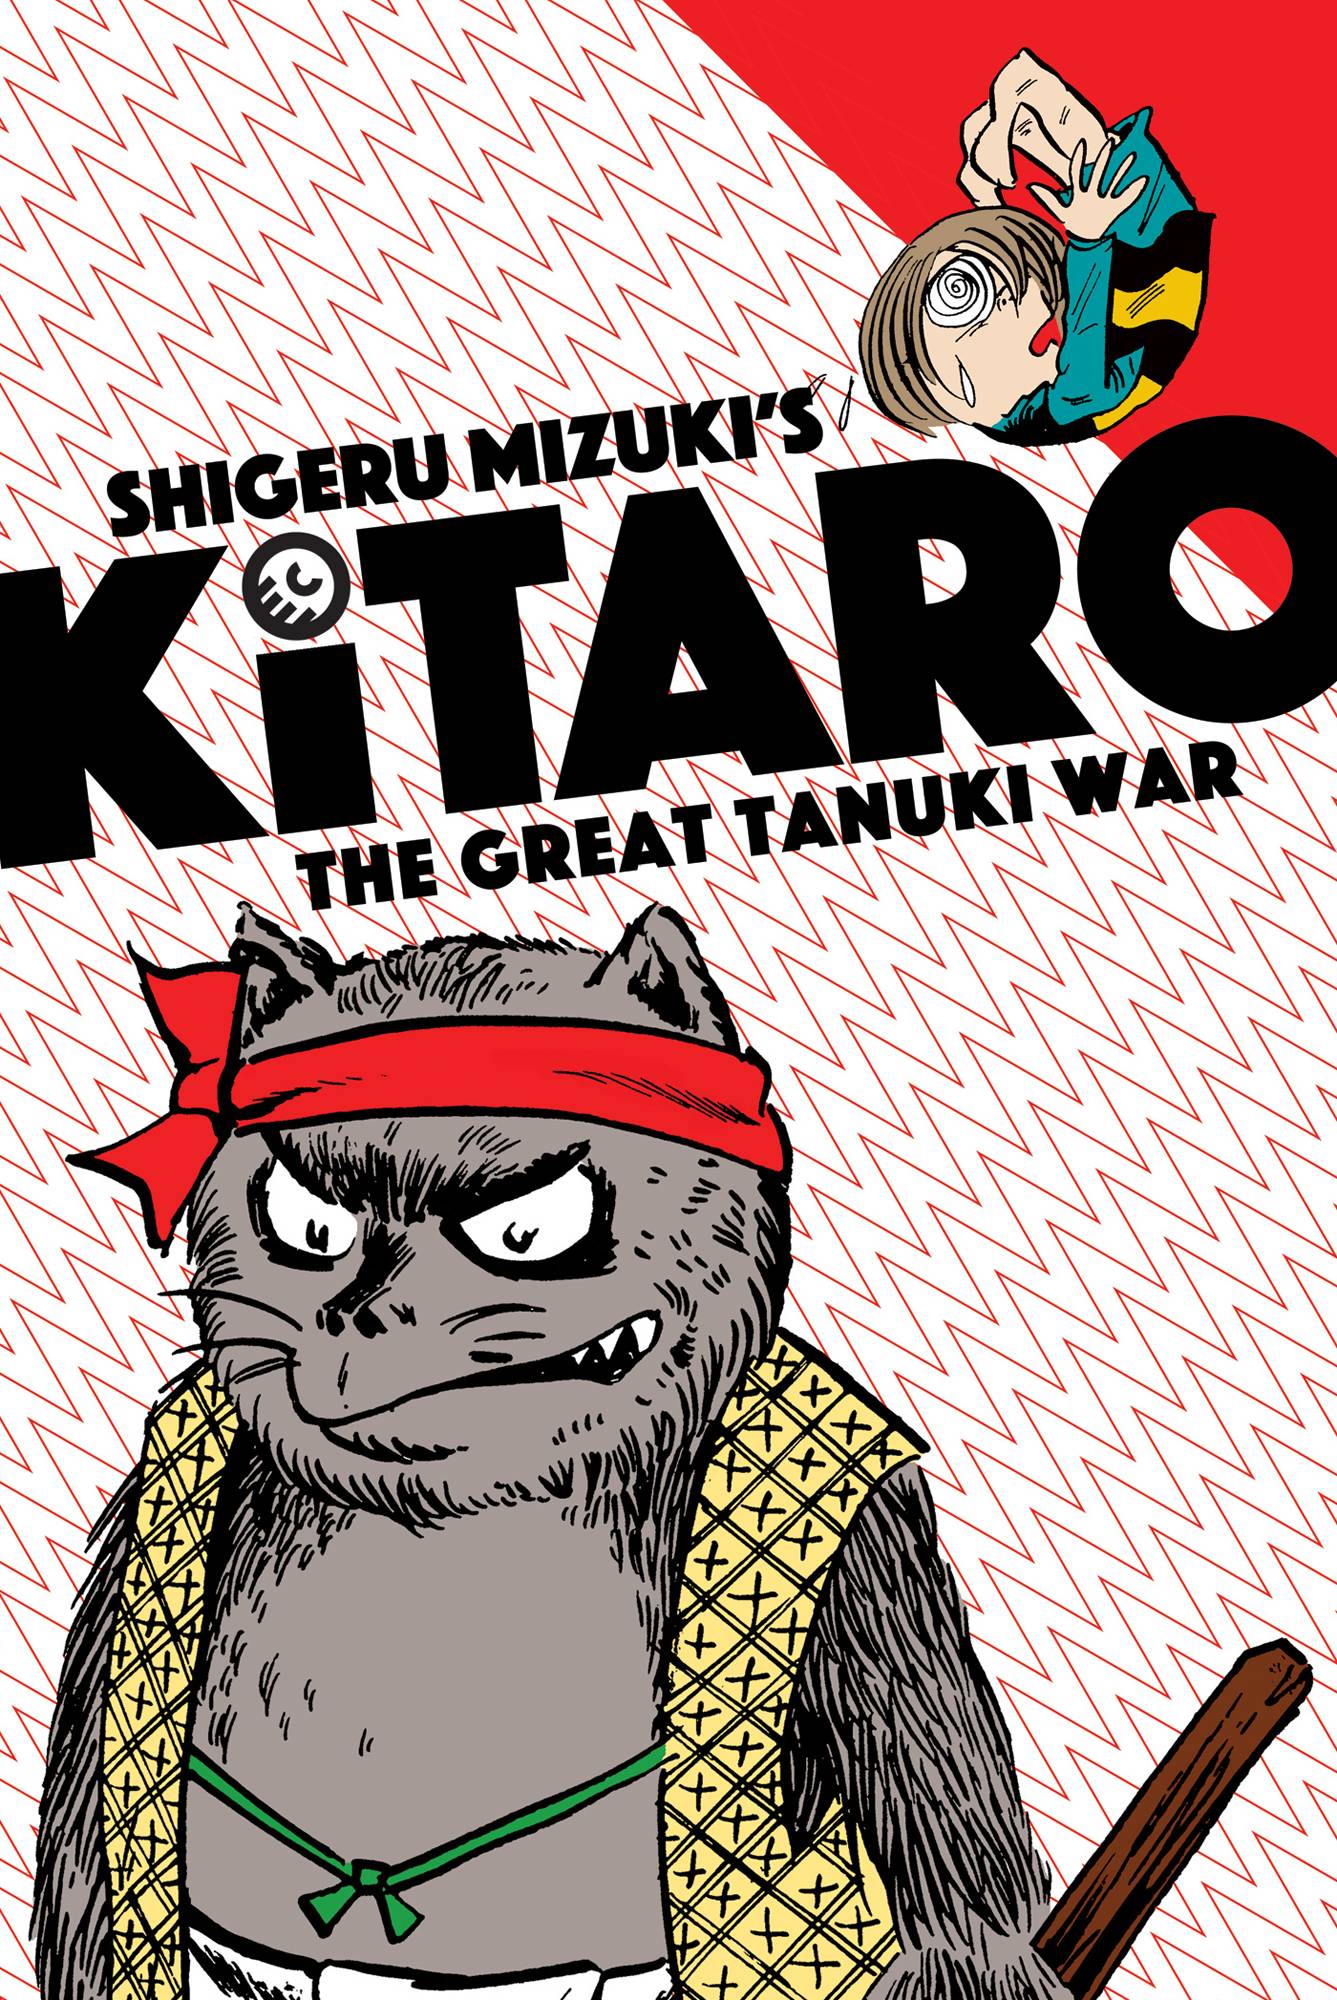 KITARO GN VOL 03 THE GREAT TANUKI WAR